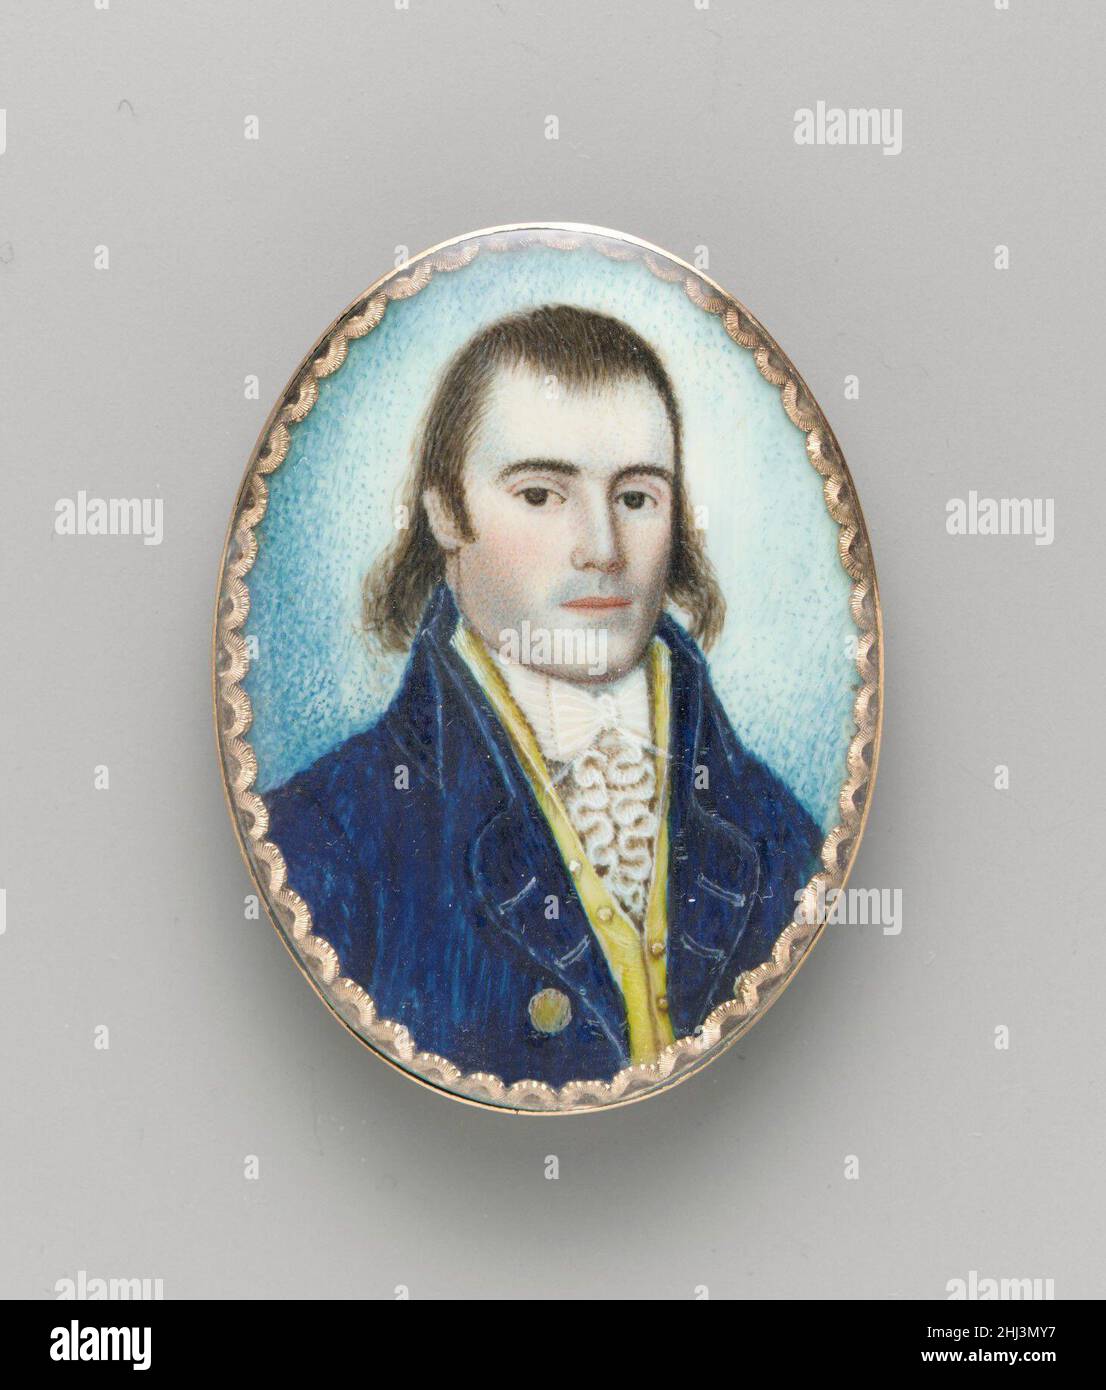 Jasper Ely Cropsey Ca. 1794 Ebenezer Mack der Sitter (1768-1813) war Seekapitän und Privatmann. Er heiratete Magdalena Ackerman im Jahr 1794.. Jasper Ely Cropsey 16725 Stockfoto